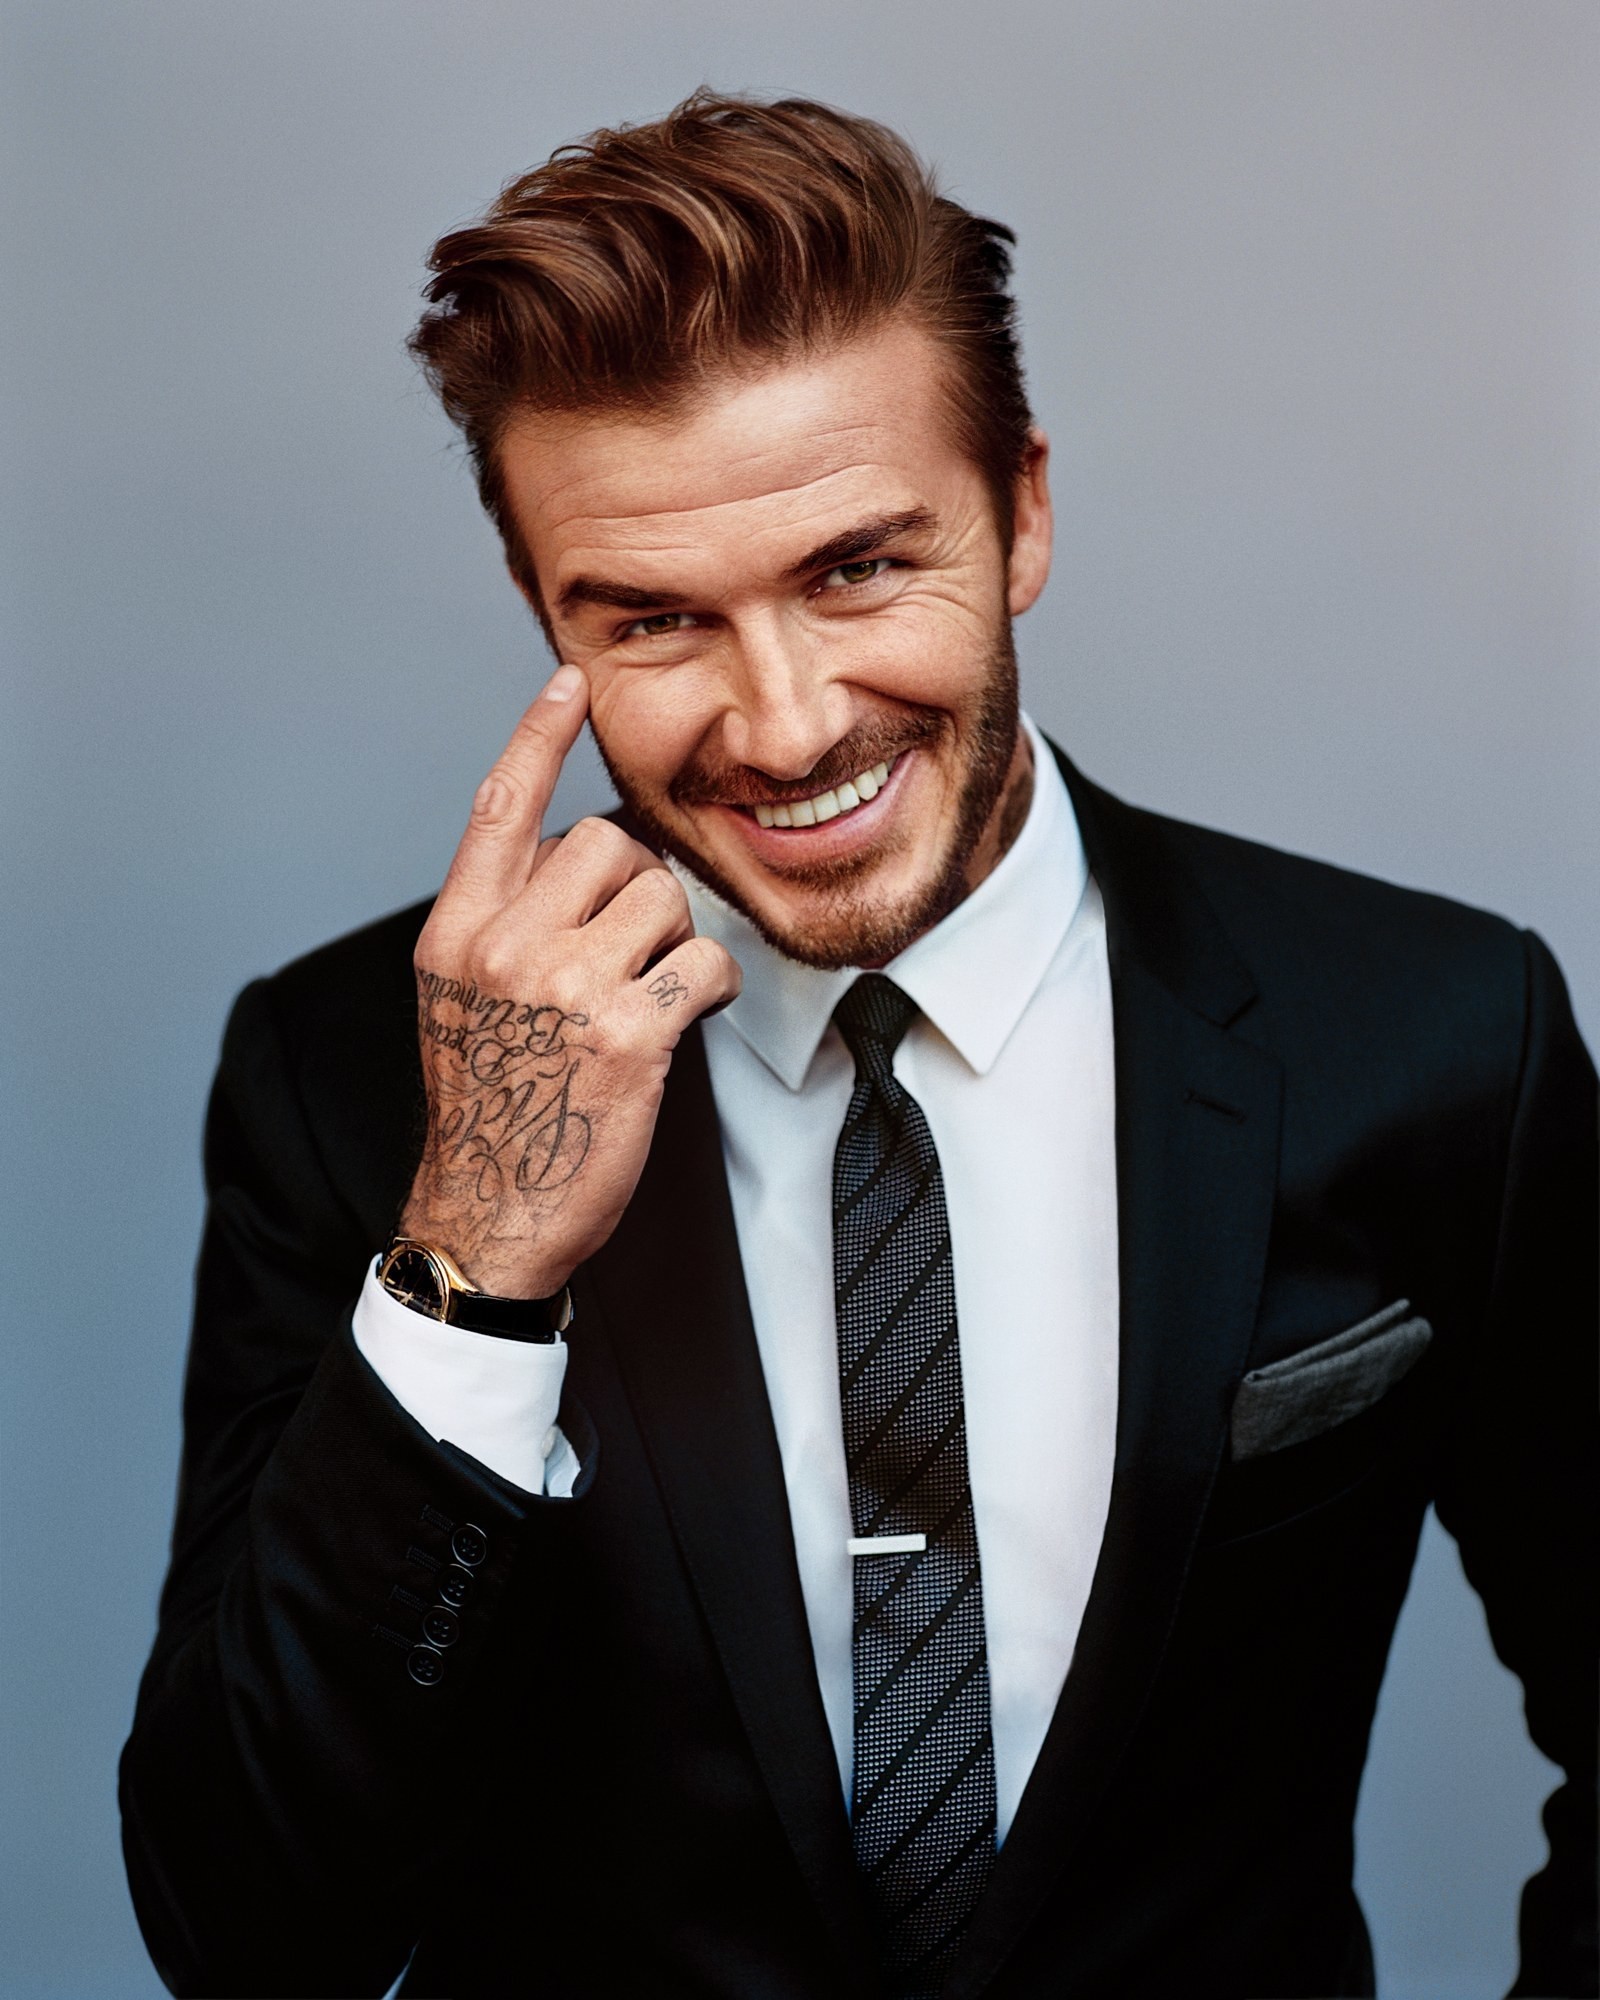 Cựu cầu thủ David Beckham chia sẻ bí quyết để giữ dáng tốt